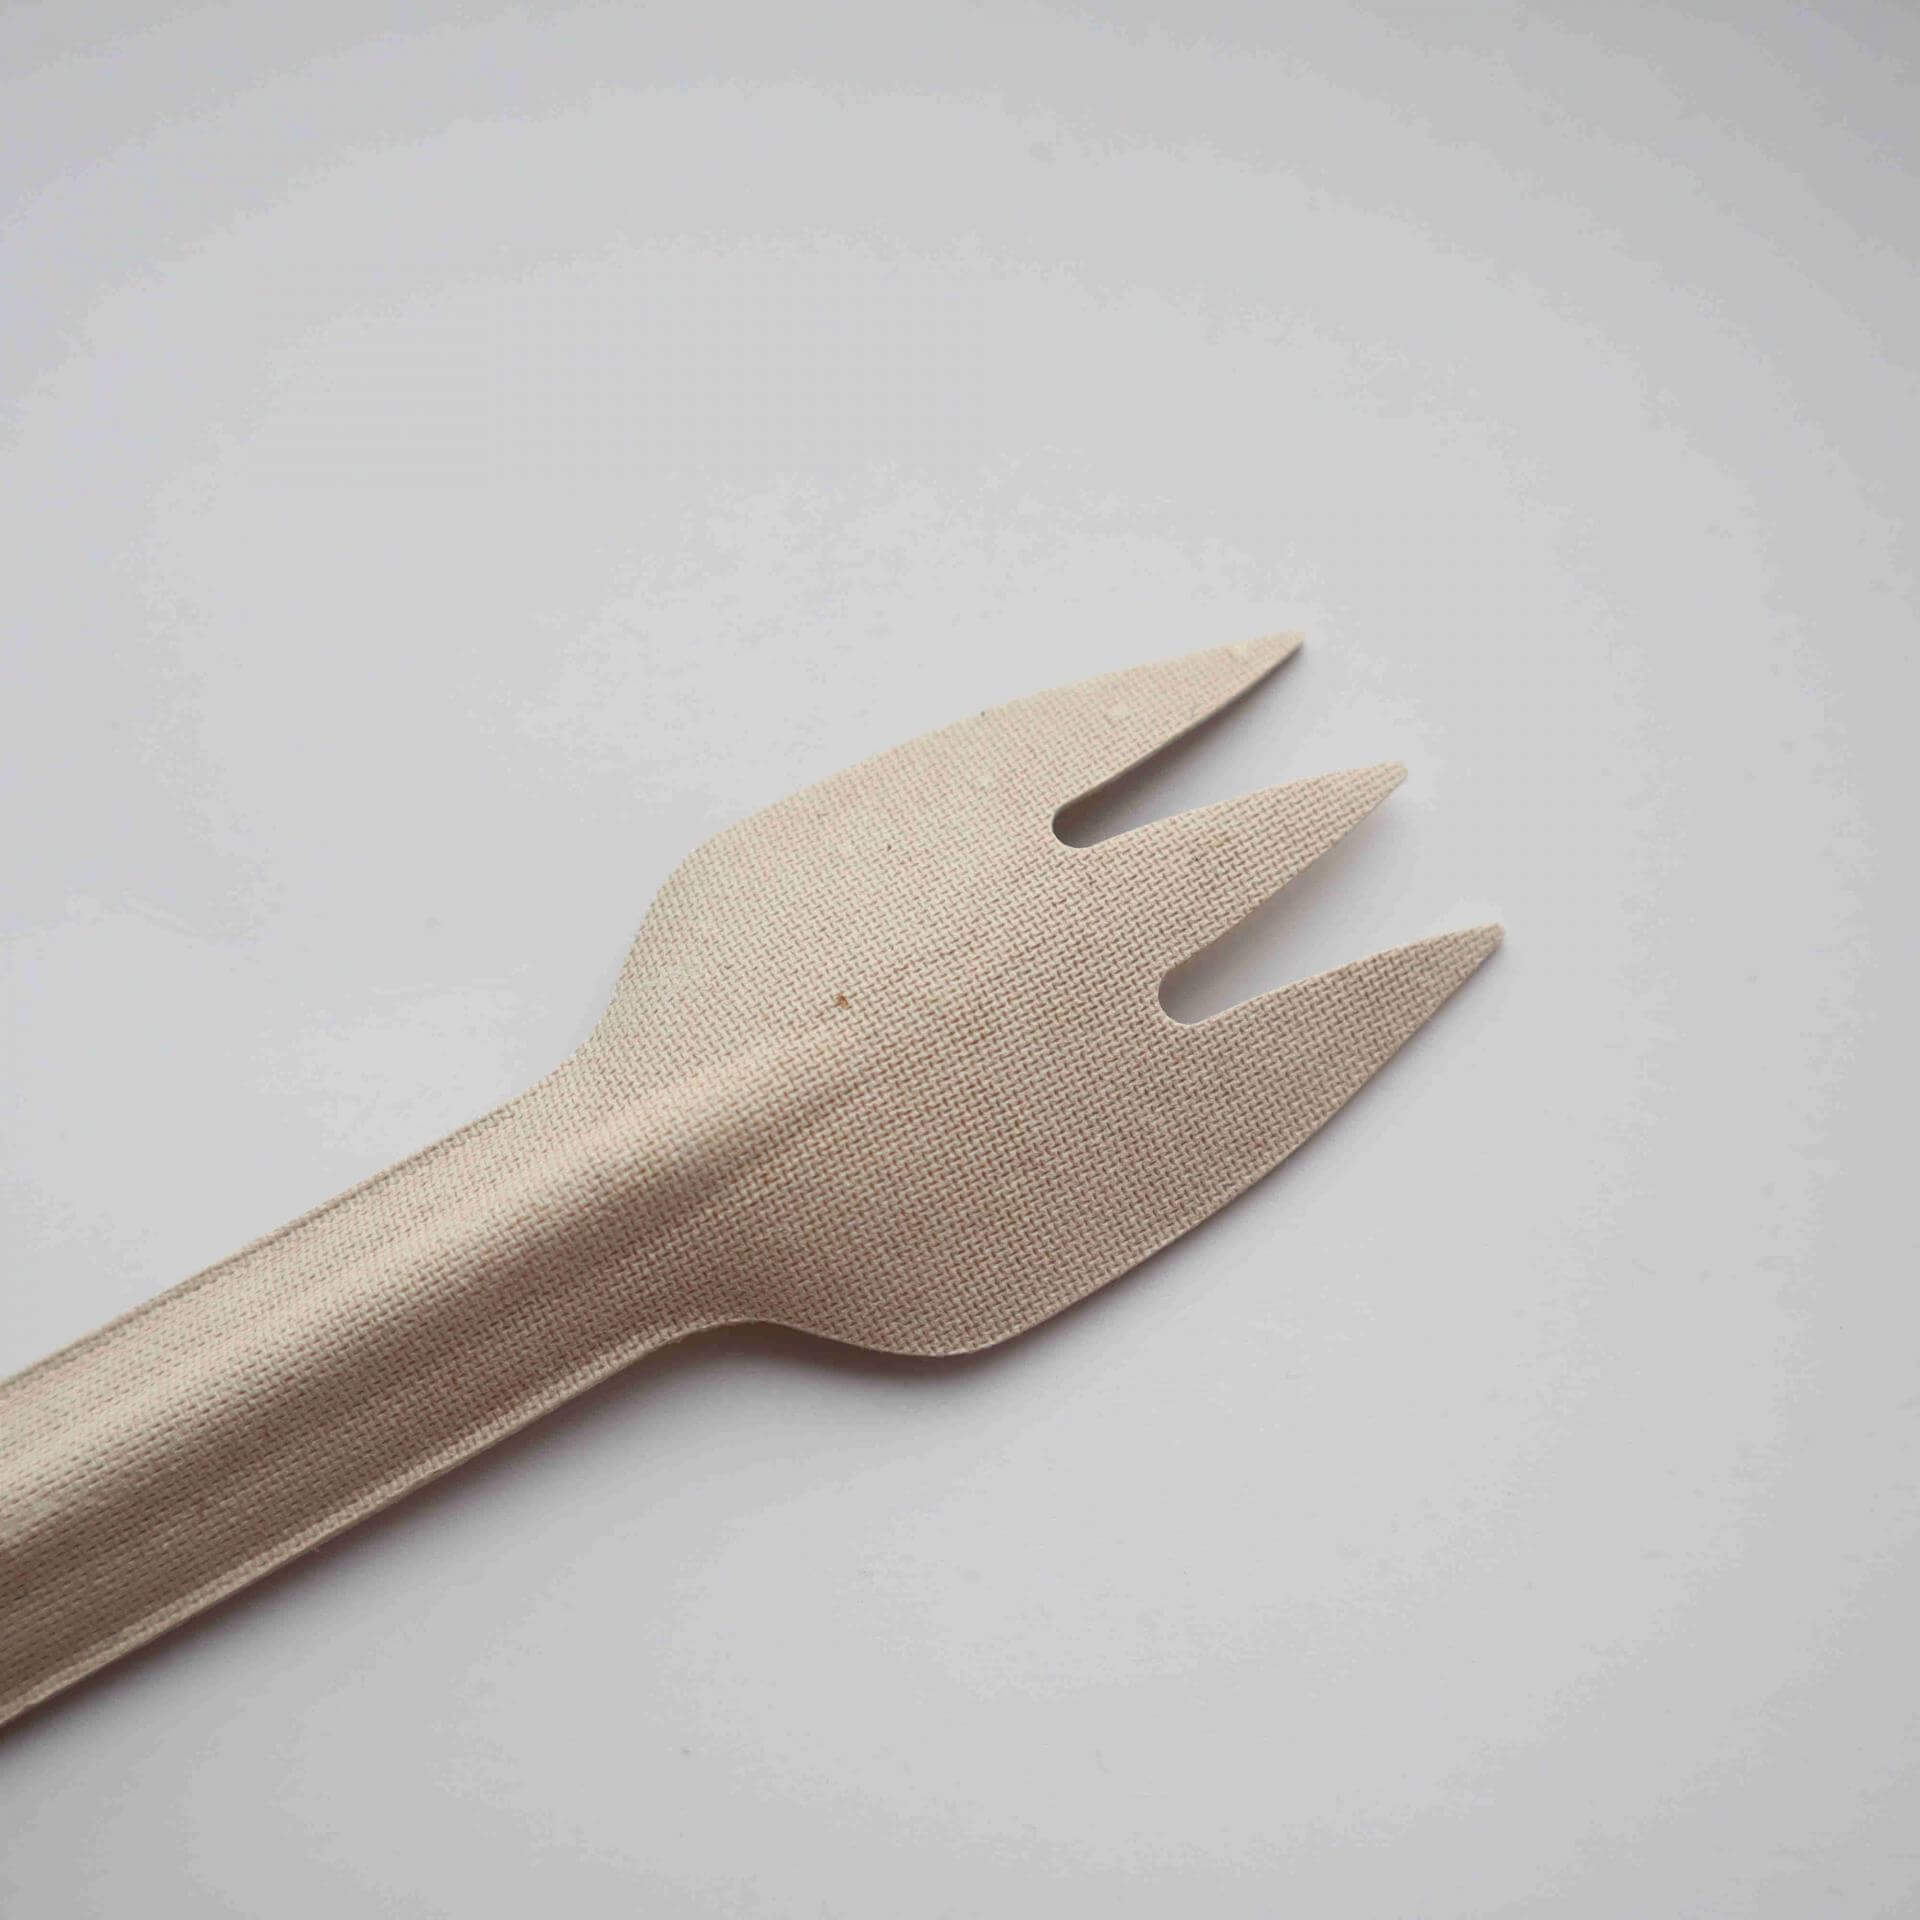 Biodegradable forks from molded fiber packaging manufacturer